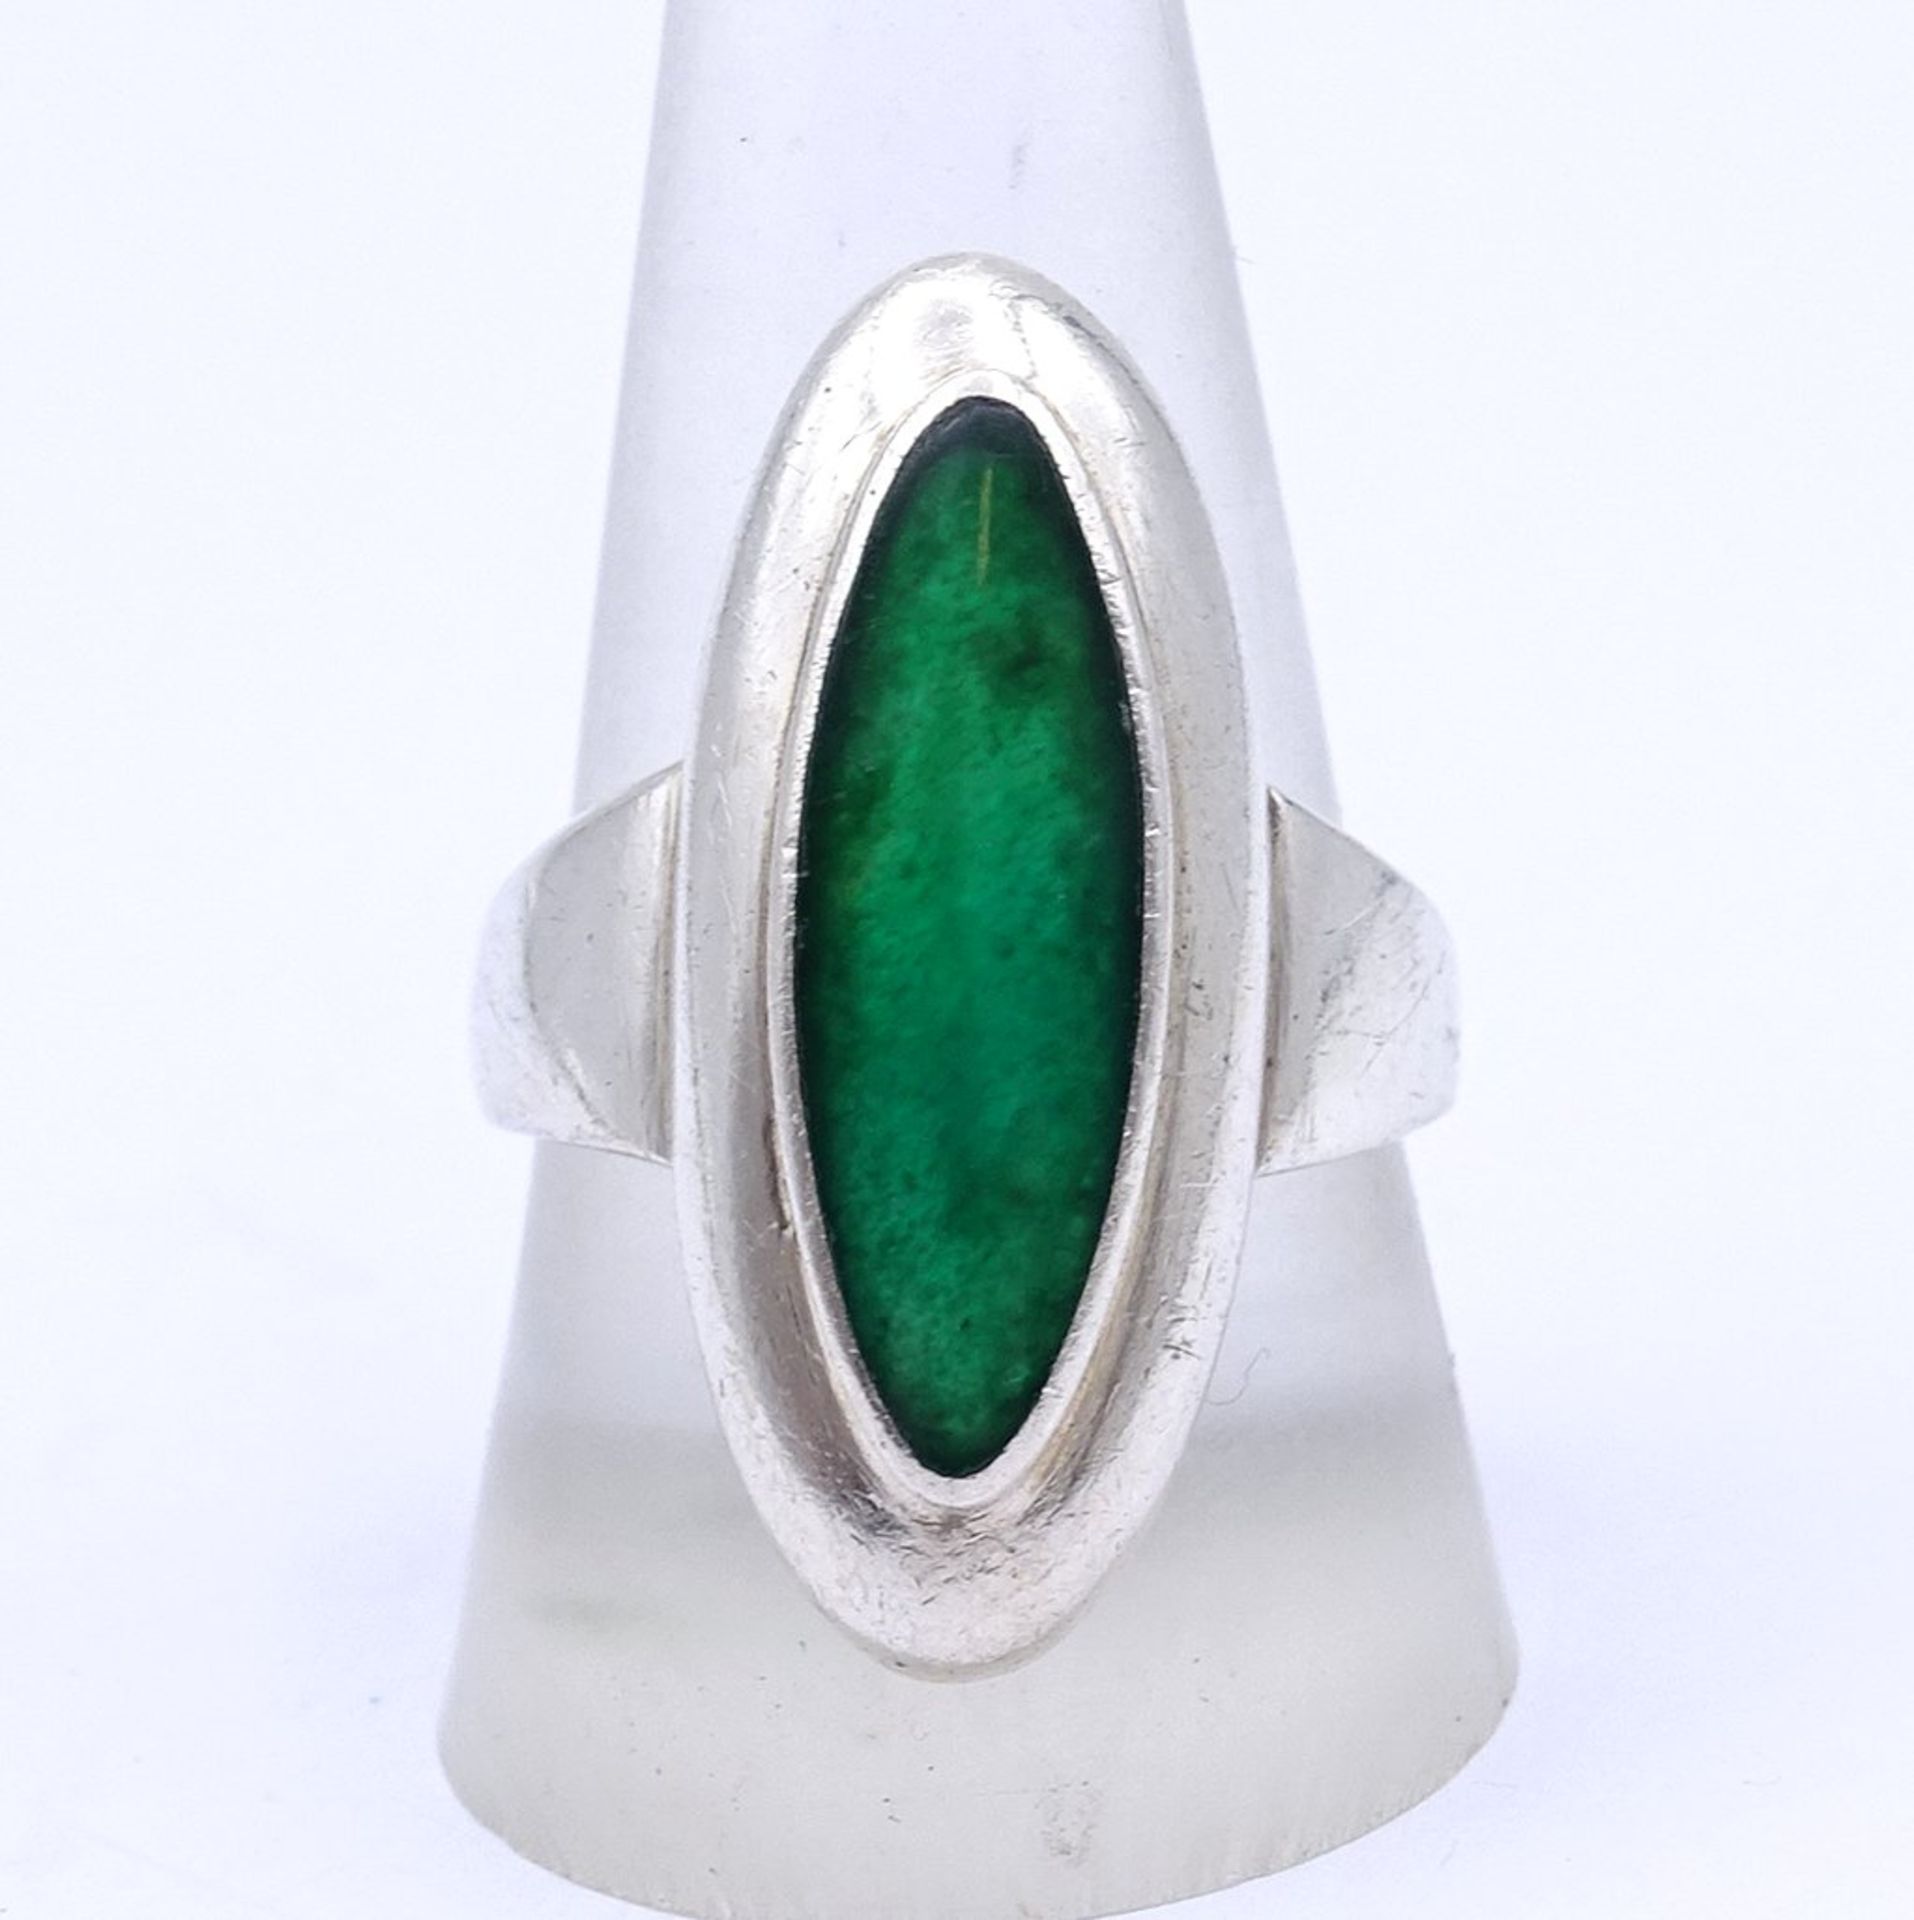 Silber Ring mit einem grünen Stein, 6,9g., RG 60 (innen stark verschmutzt)